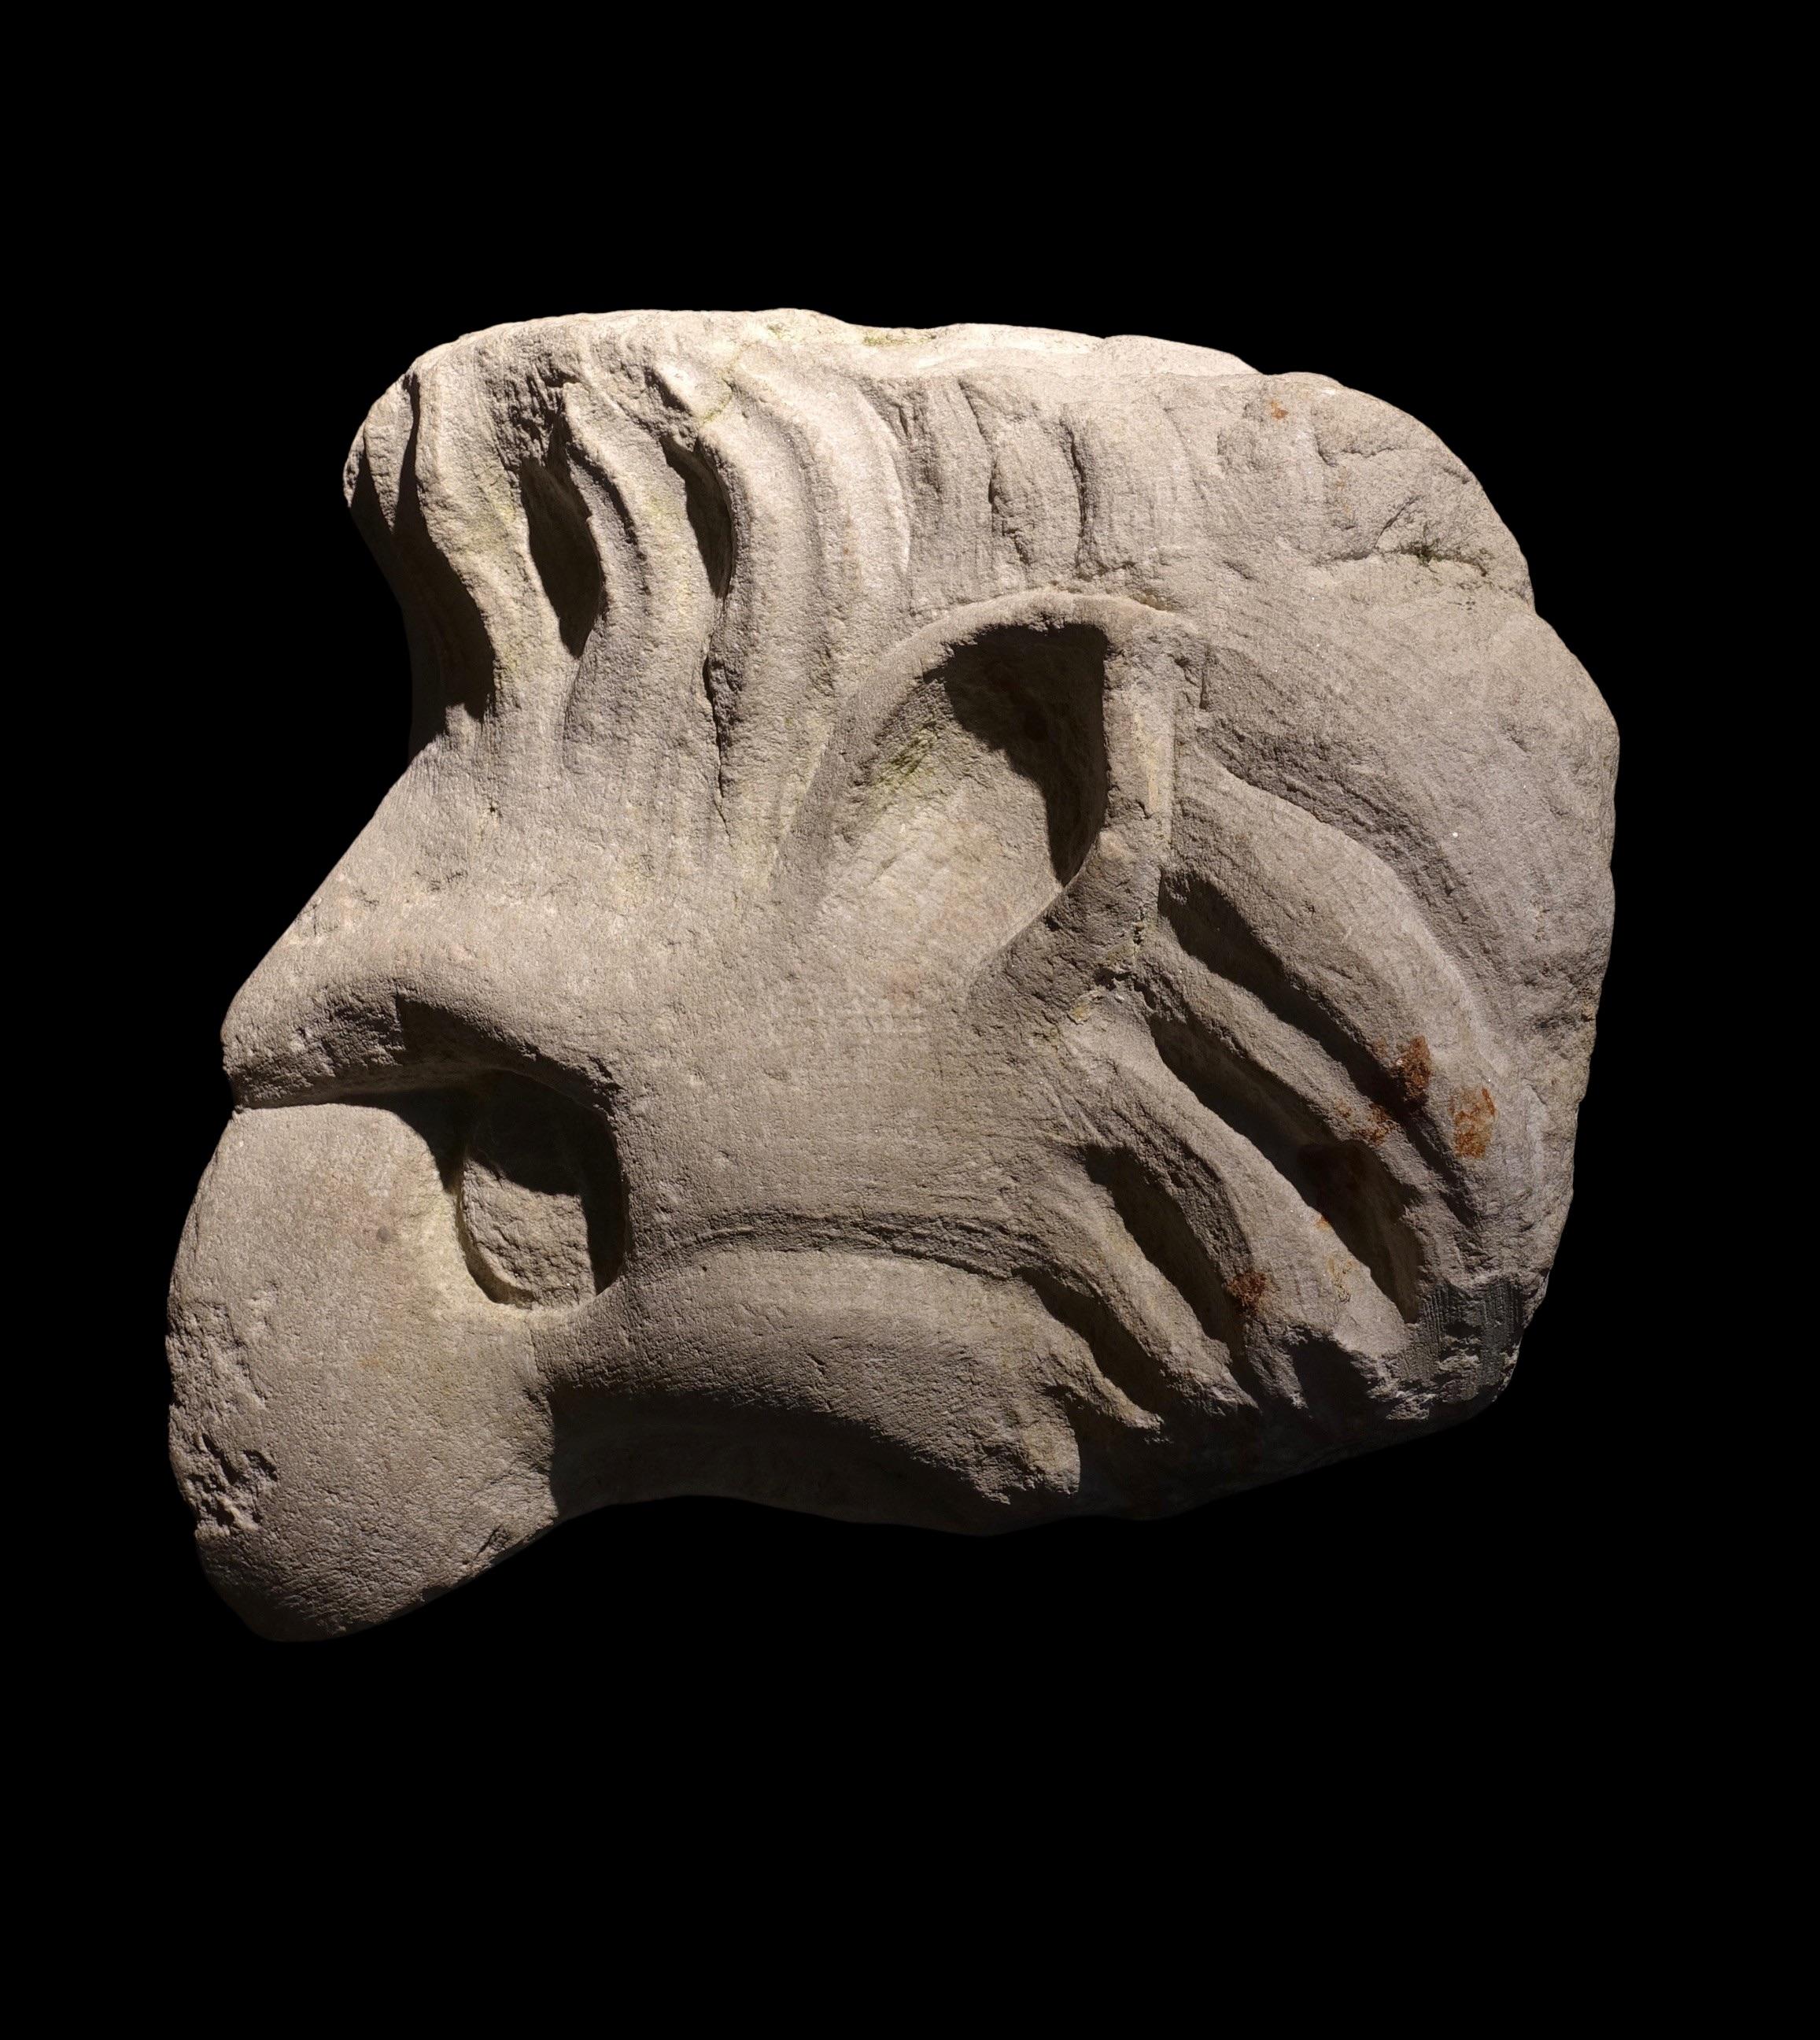 Tête de griffon
Italie, XVIe siècle
Sur un support métallique moderne 
Dimensions : 20 x 29 x 21 cm (sans le support)

Le griffon est une créature légendaire qui a le corps d'un lion, la tête et les ailes d'un aigle et des oreilles de